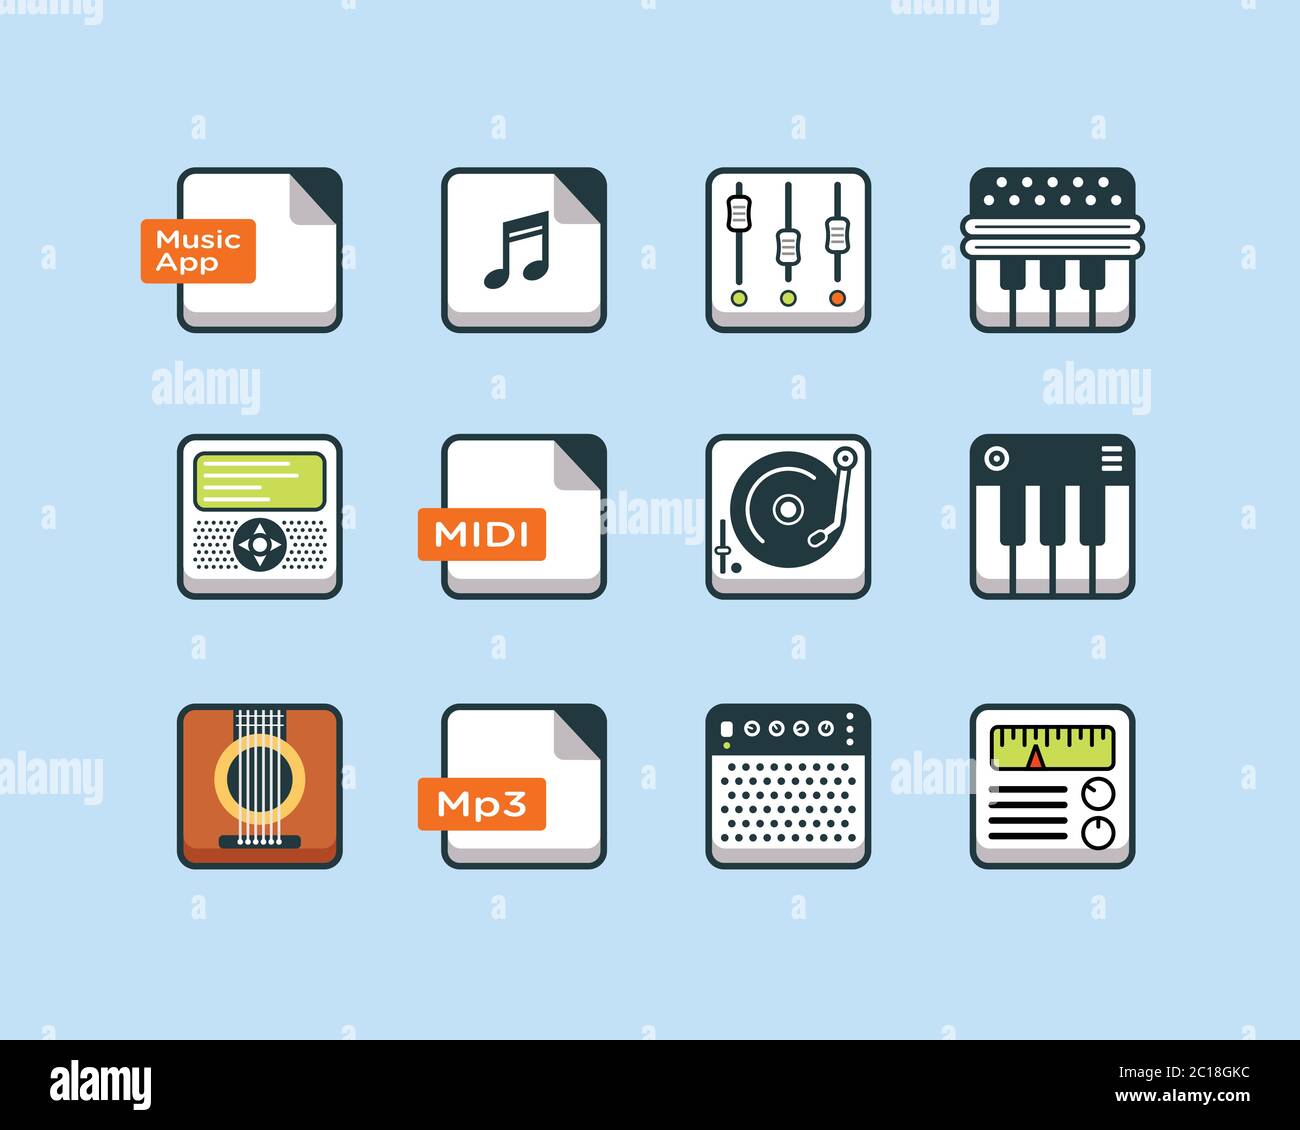 Icona dell'app musicale in un riquadro quadrato arrotondato. Adatto per elementi di design per software e app di lettori musicali. Collezione di tecnologia audio moderna. Illustrazione Vettoriale